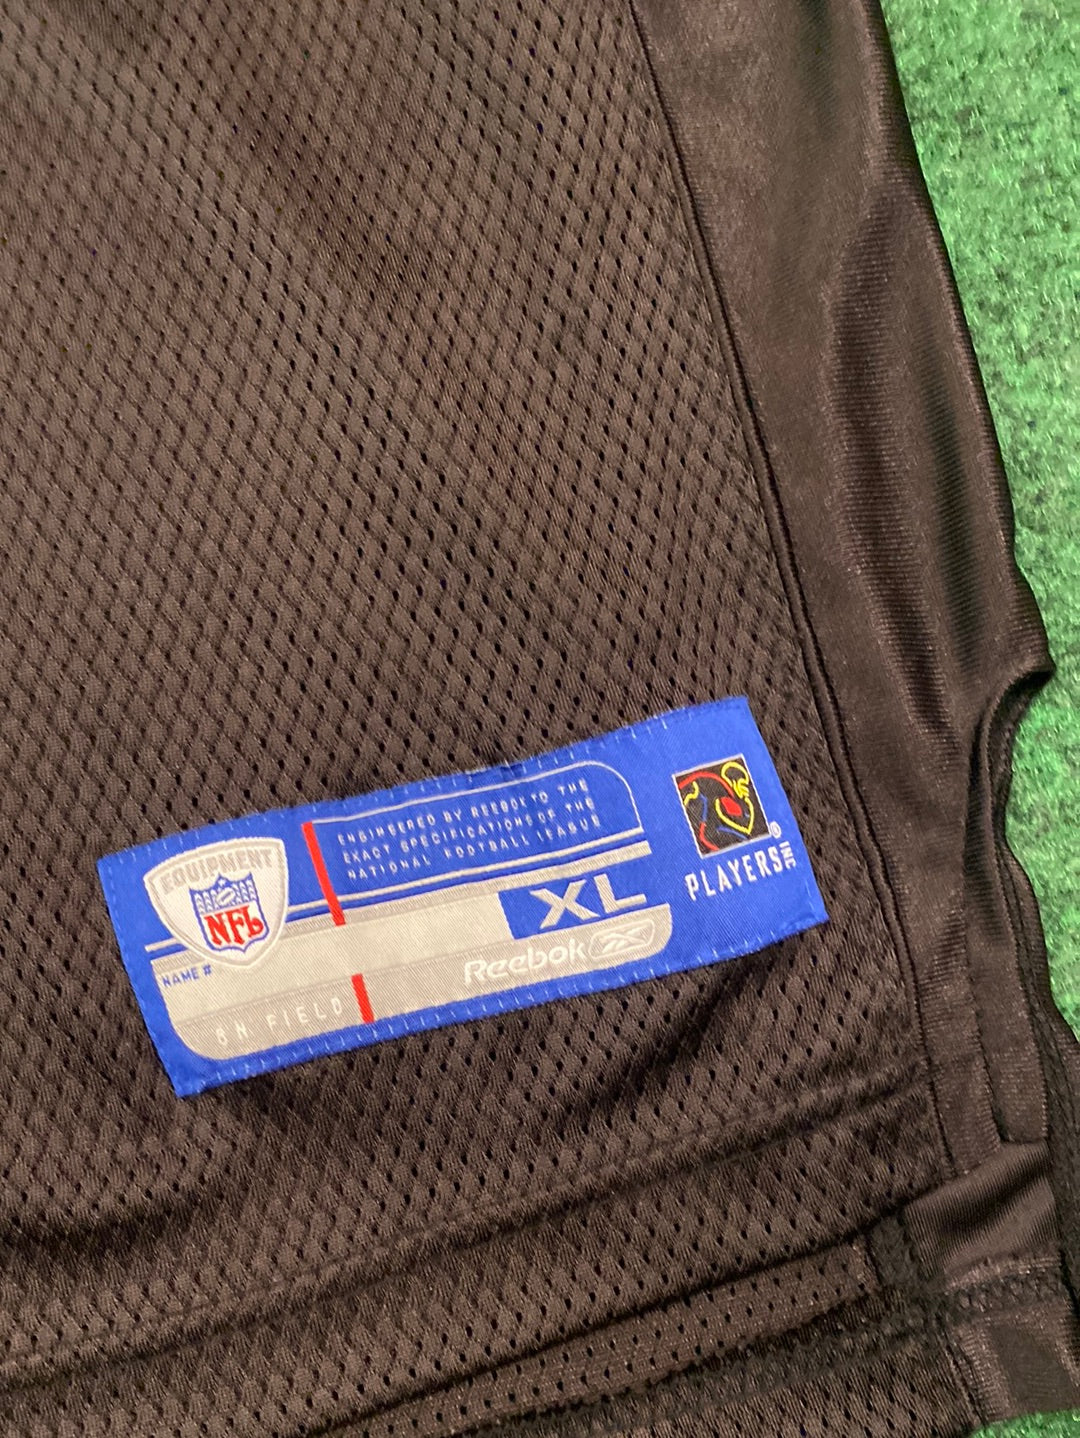 00s Ma’ake Kemoeatu Carolina Panthers Reebok NFL Equipment Jersey (XL)